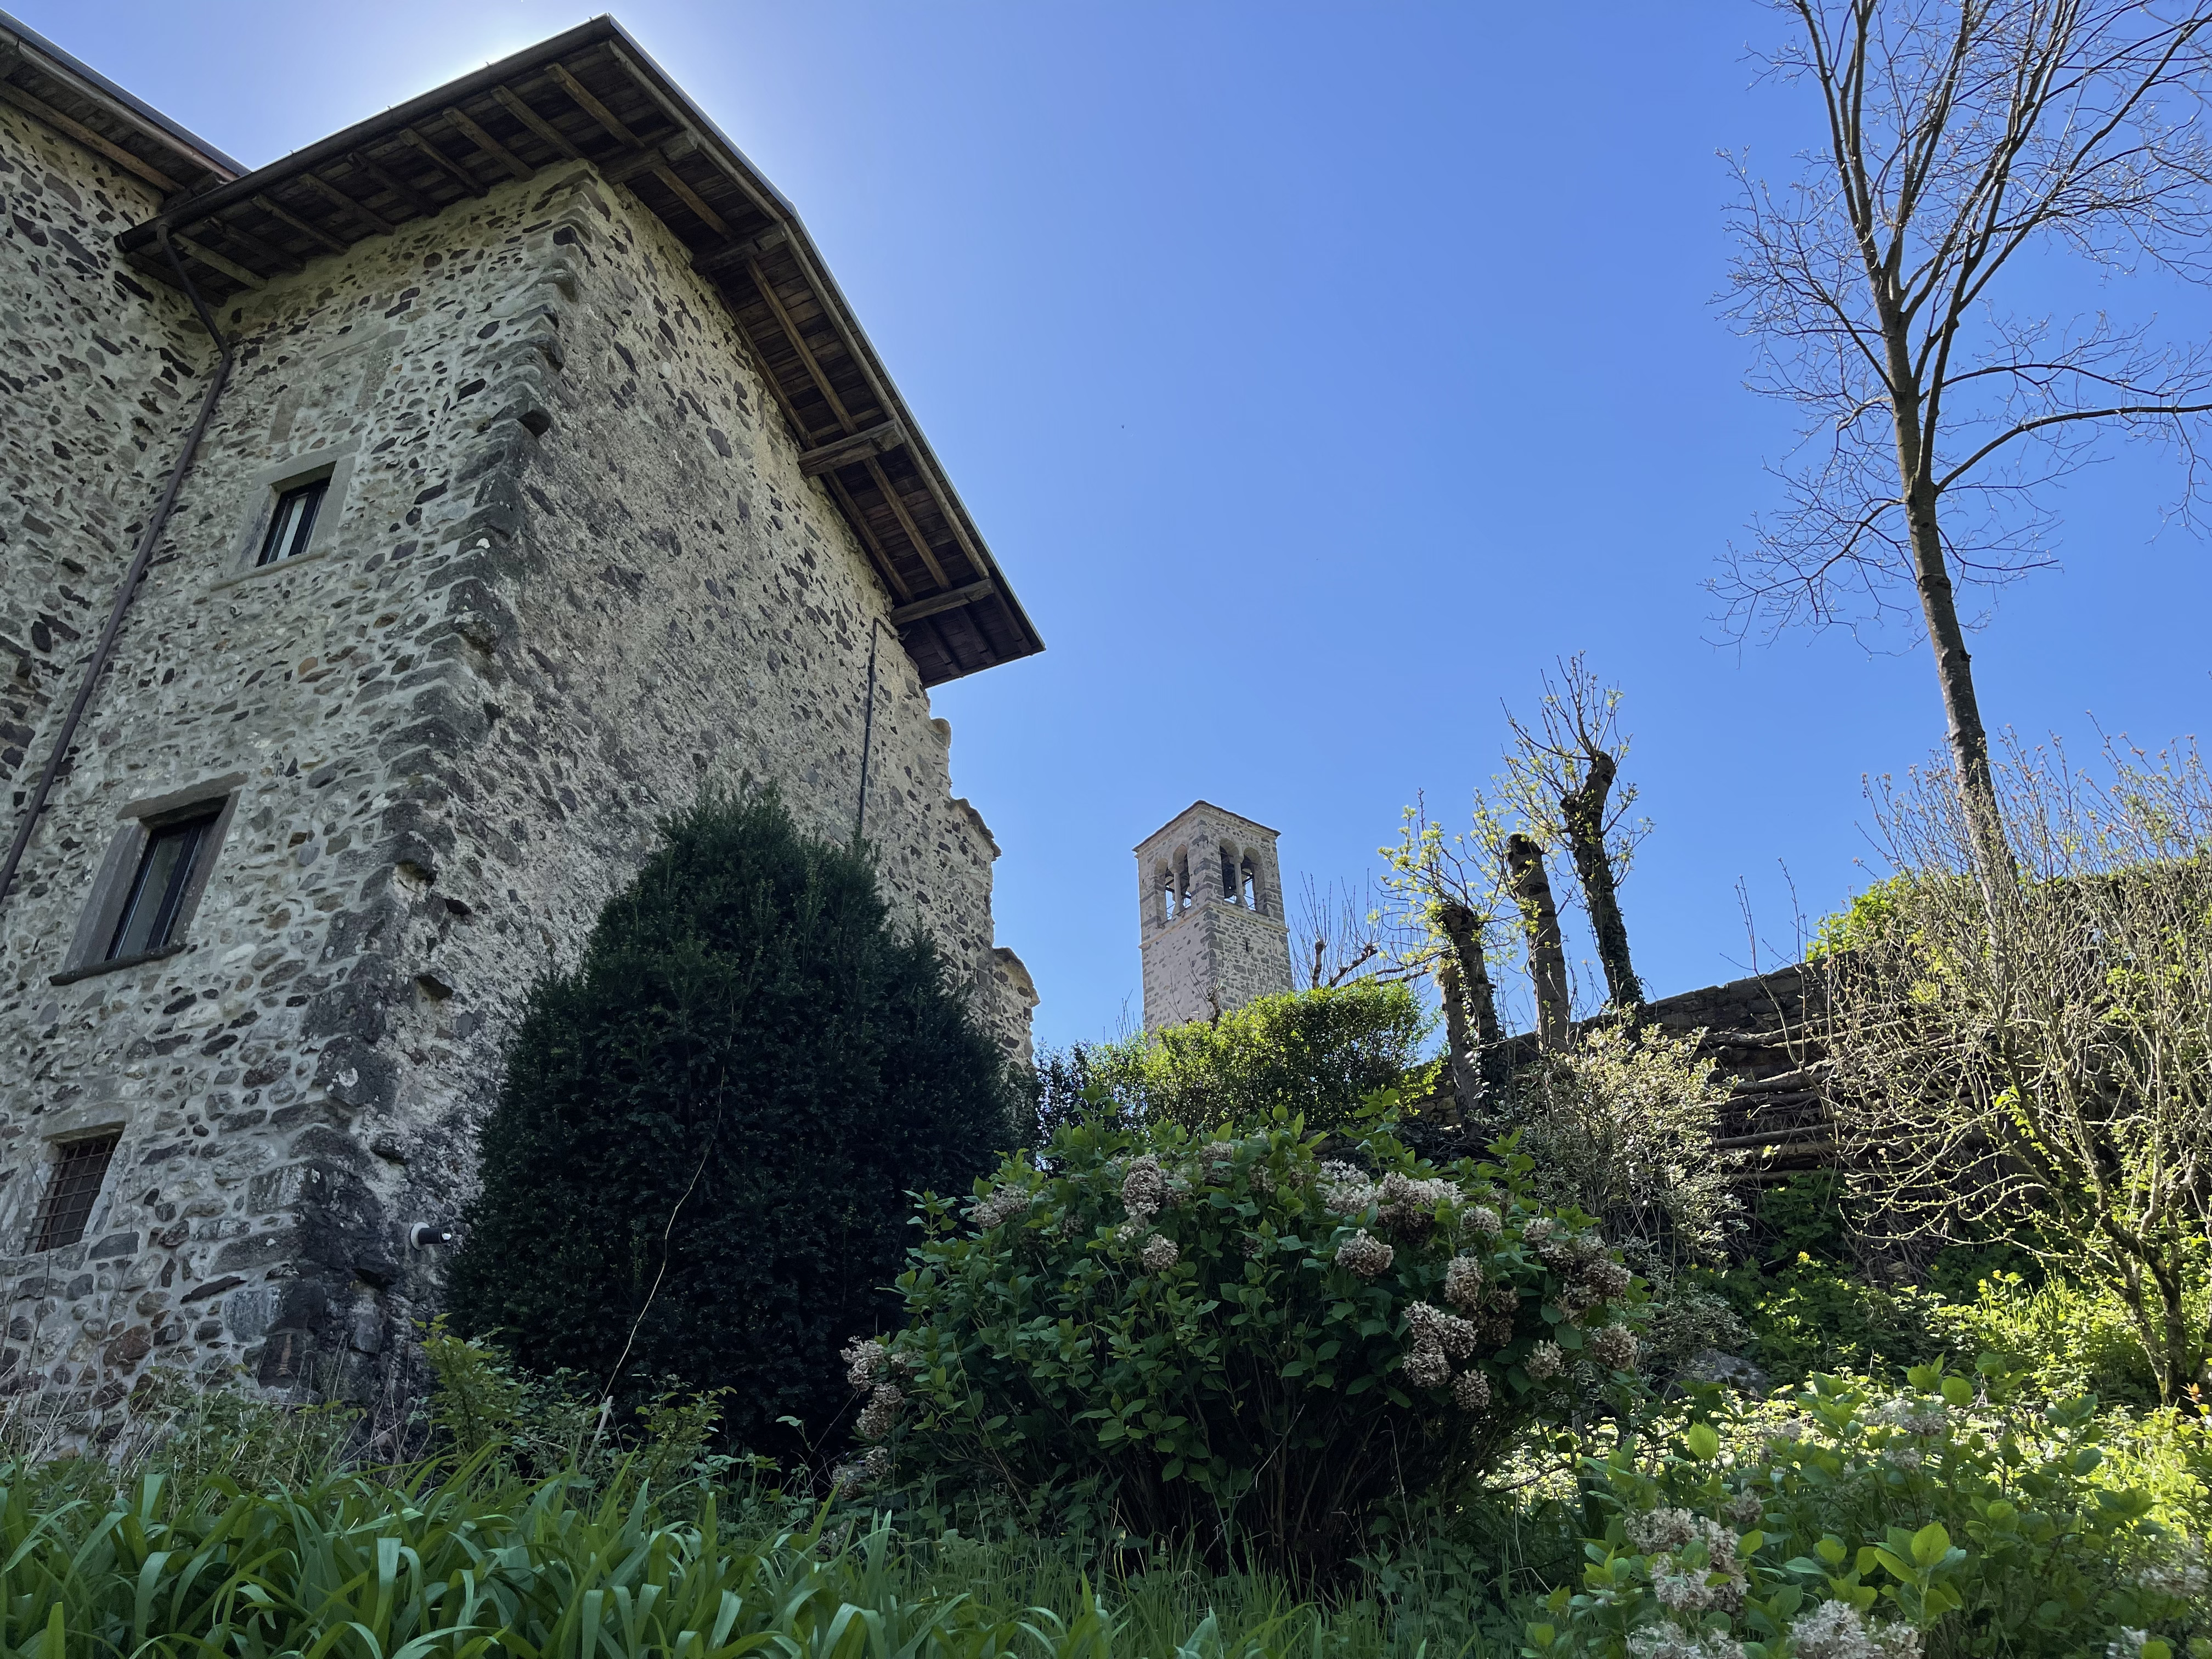 Ripartono le visite estive per adulti alla scoperta del borgo medievale di Cornello e del suo legame con la famiglia Tasso.